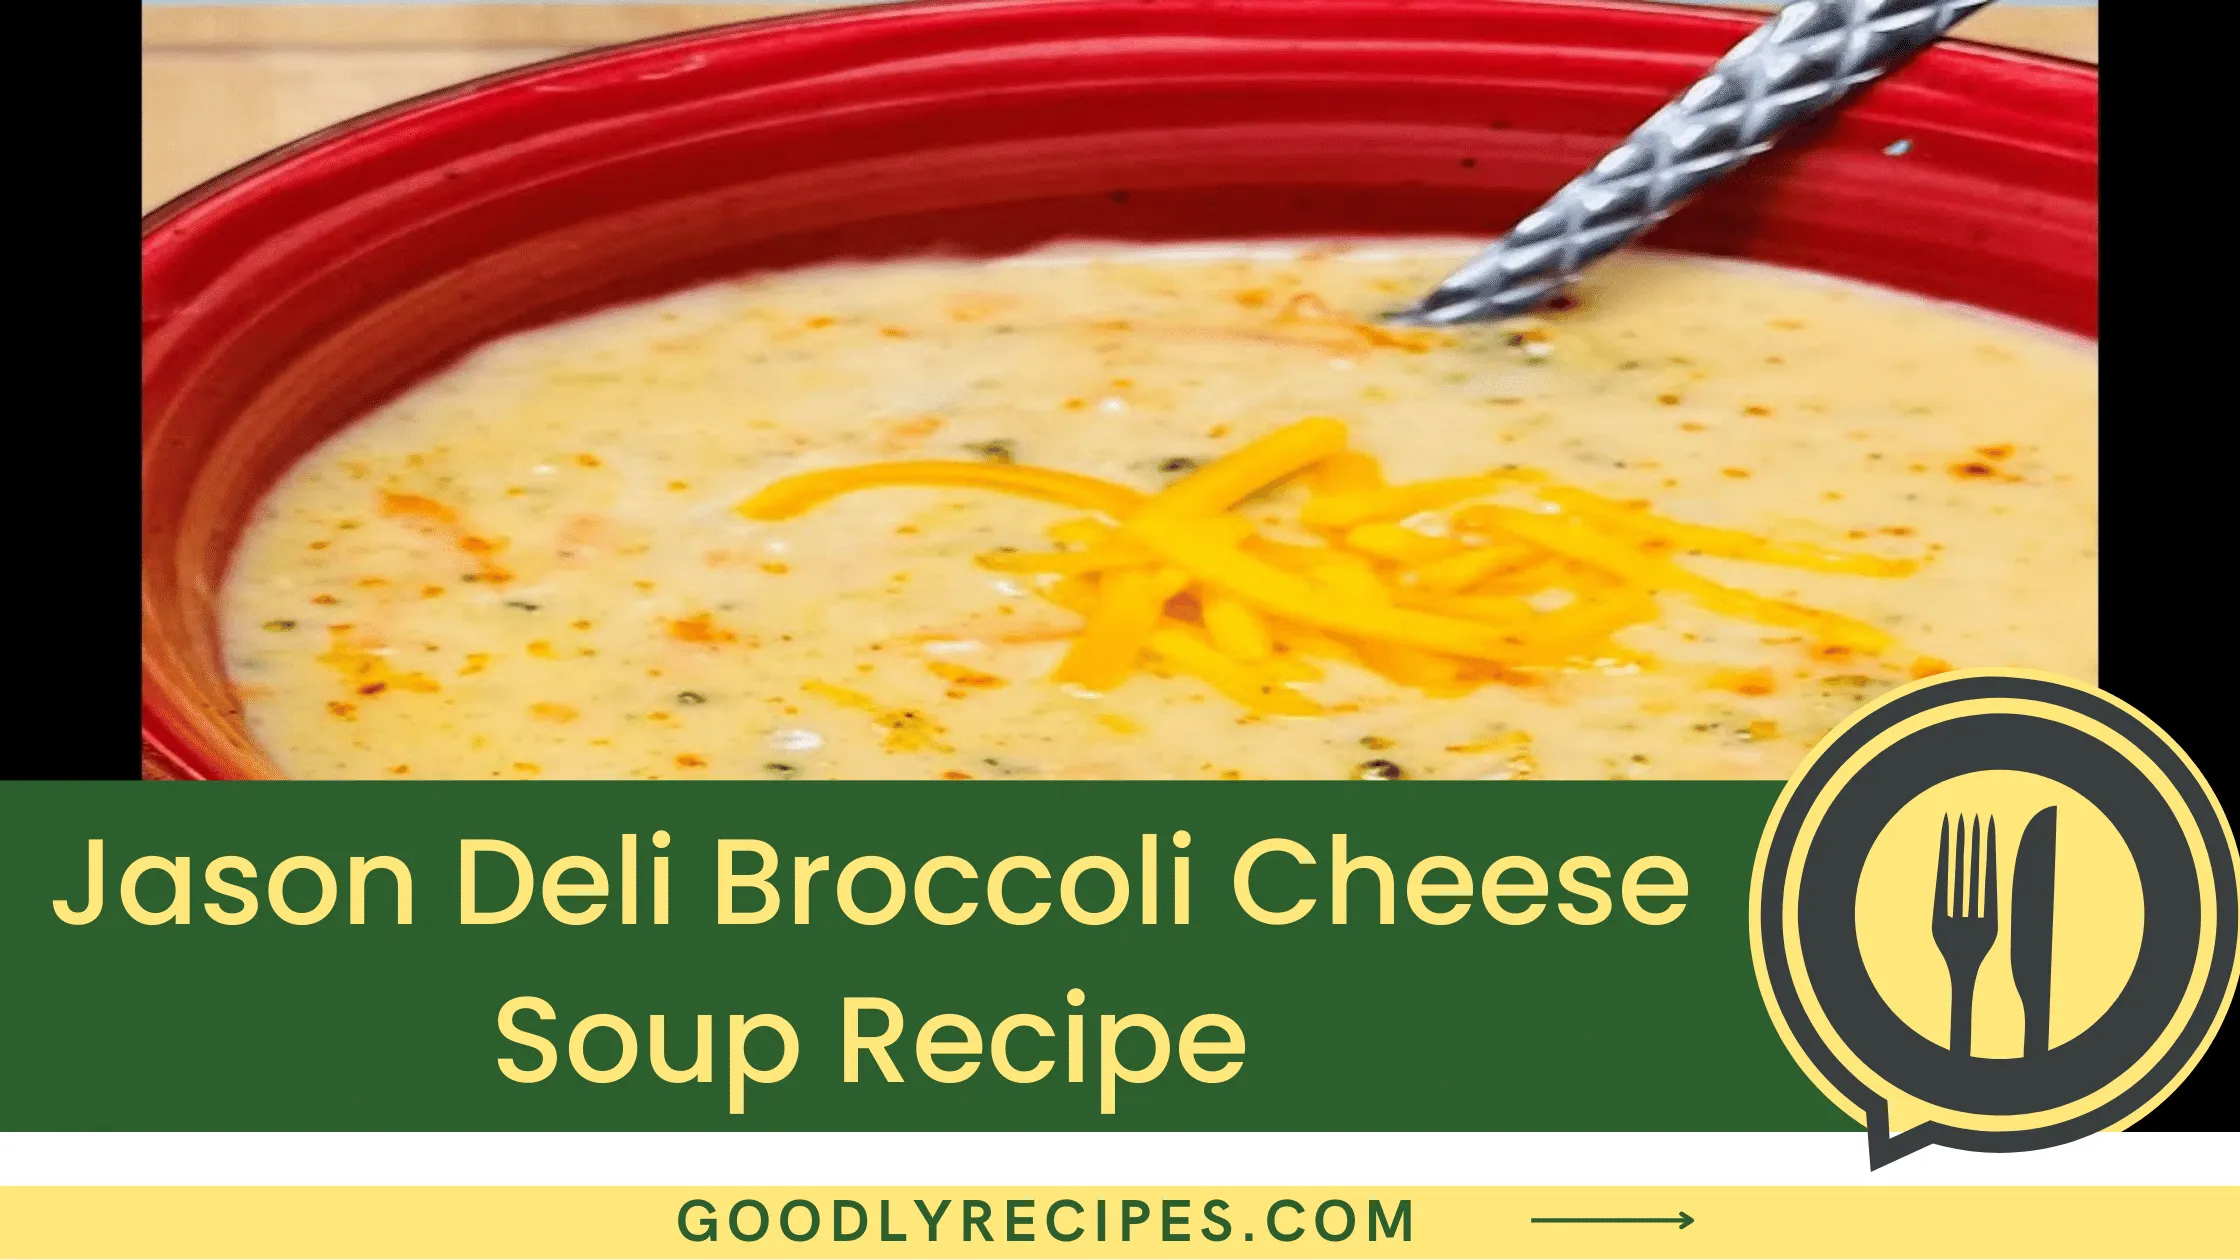 Jason Deli Broccoli Cheese Soup Recipe